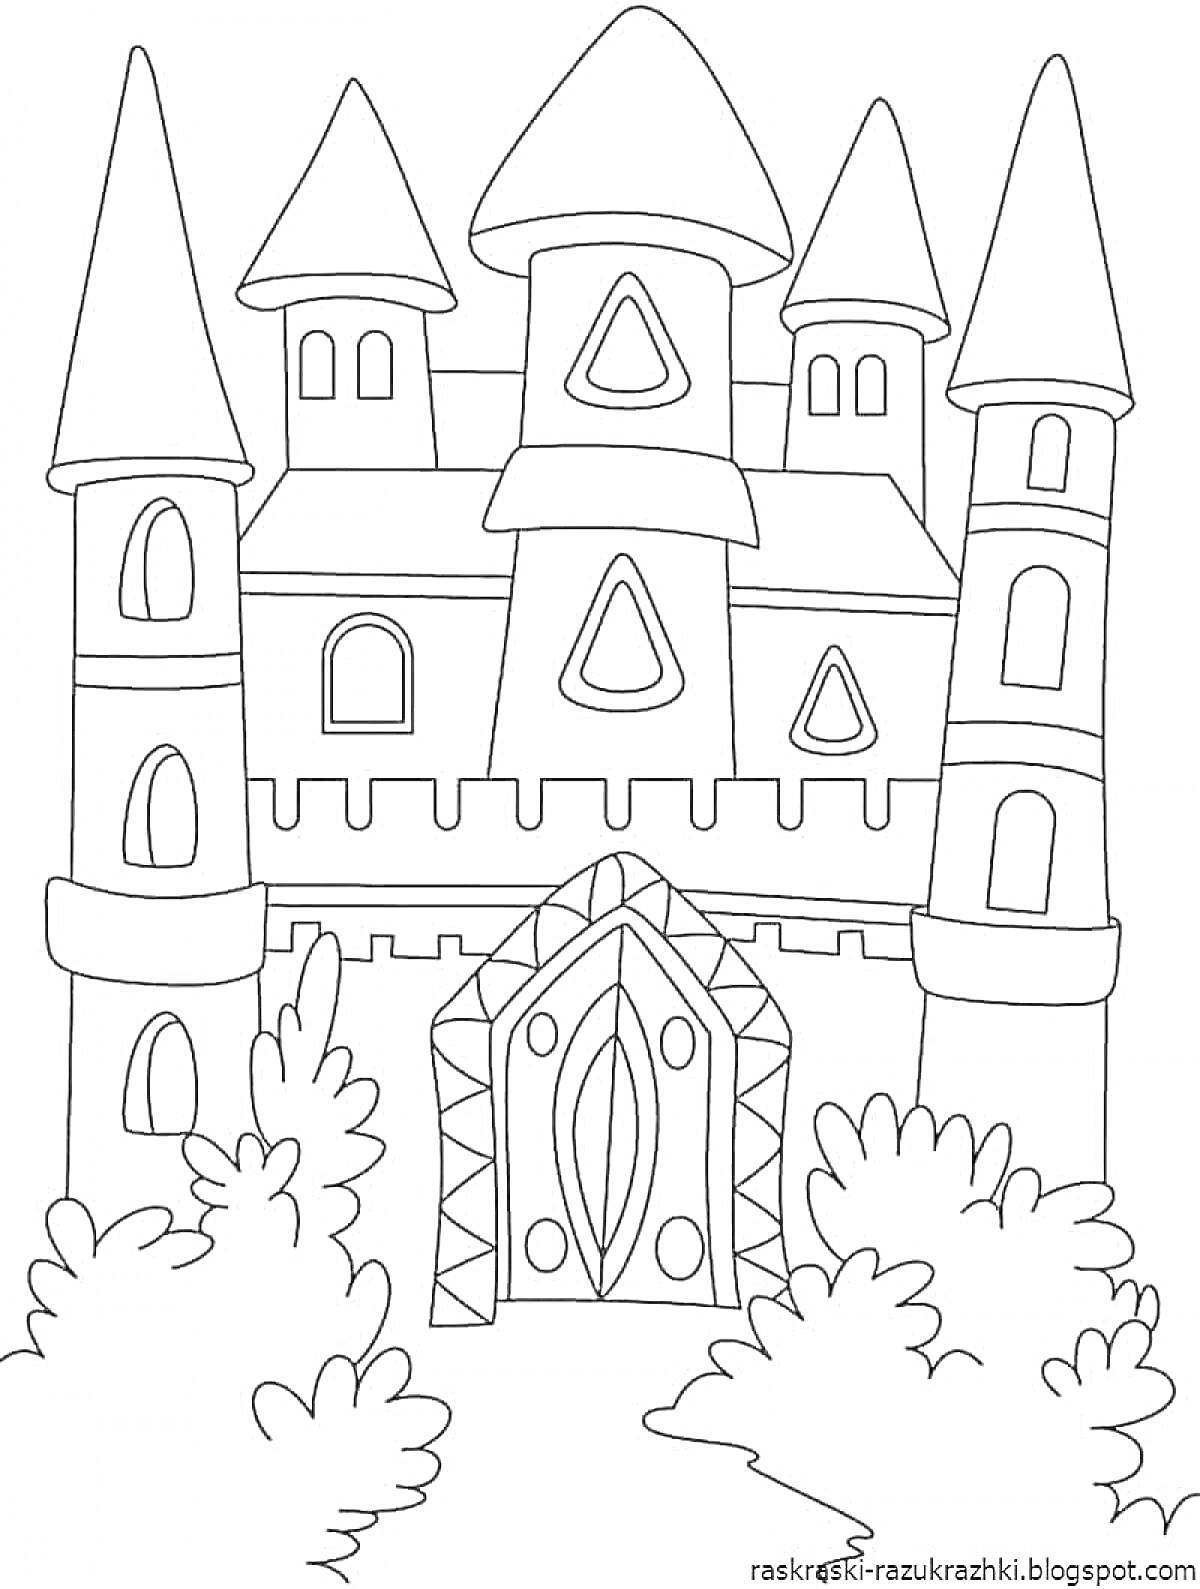 Раскраска Замок с шестью башнями, воротами и кустами на переднем плане